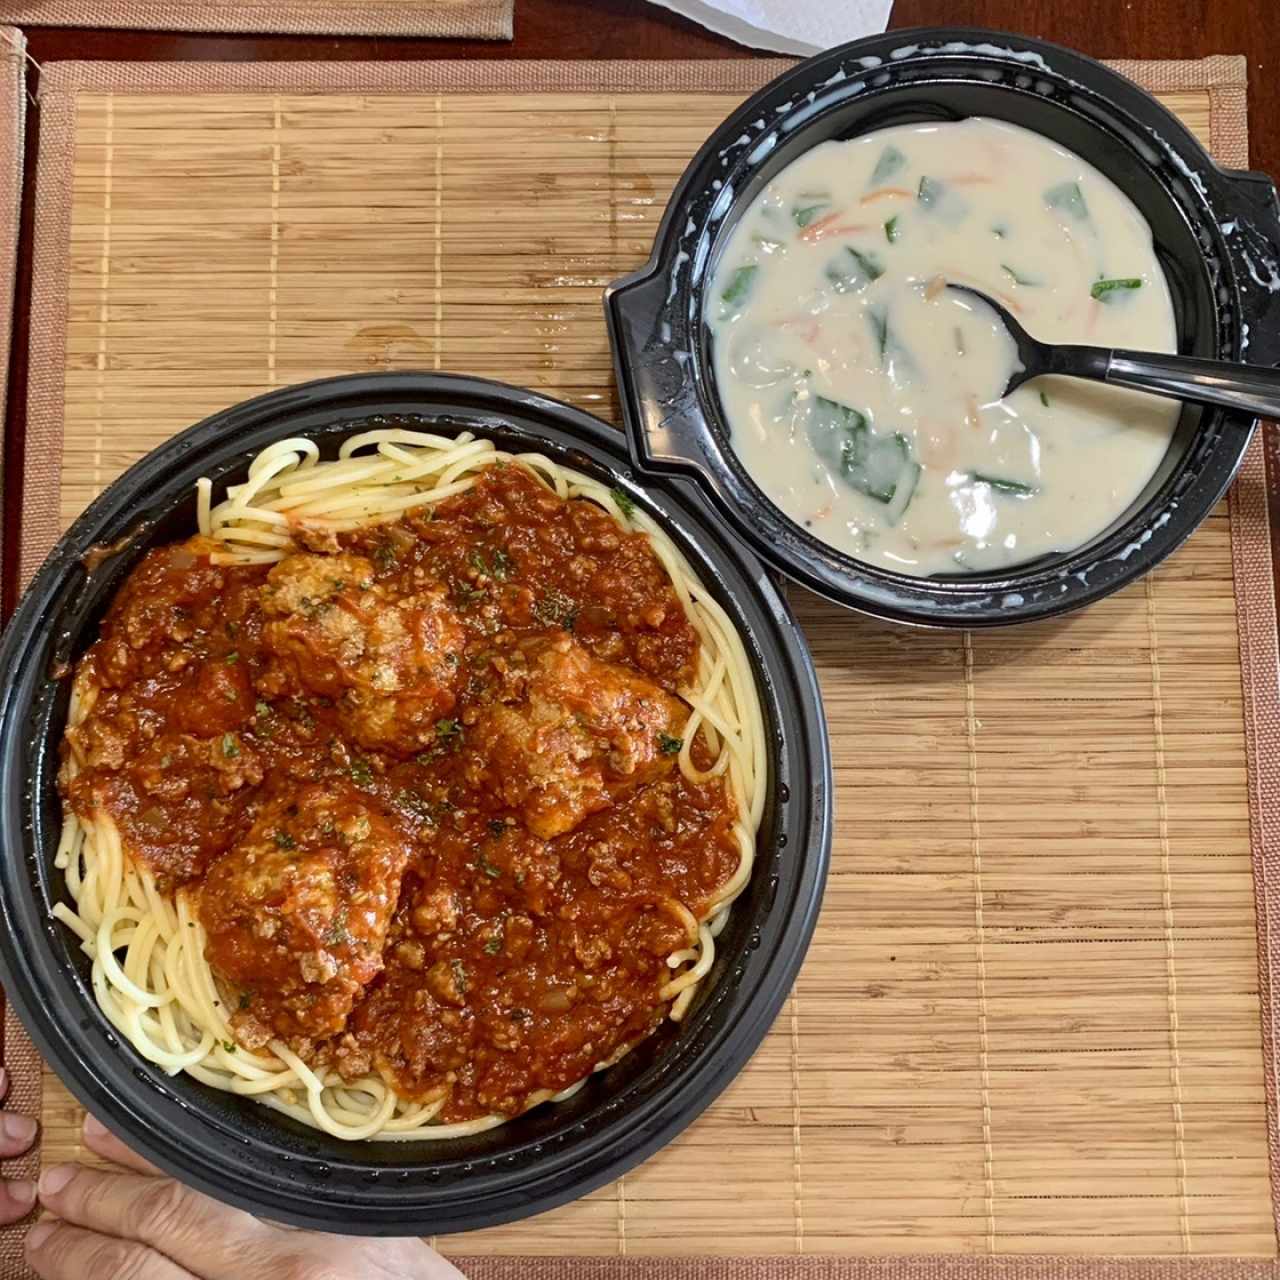 Promociones - Spaghetti con Albondigas. en el restaurante me gustan mas